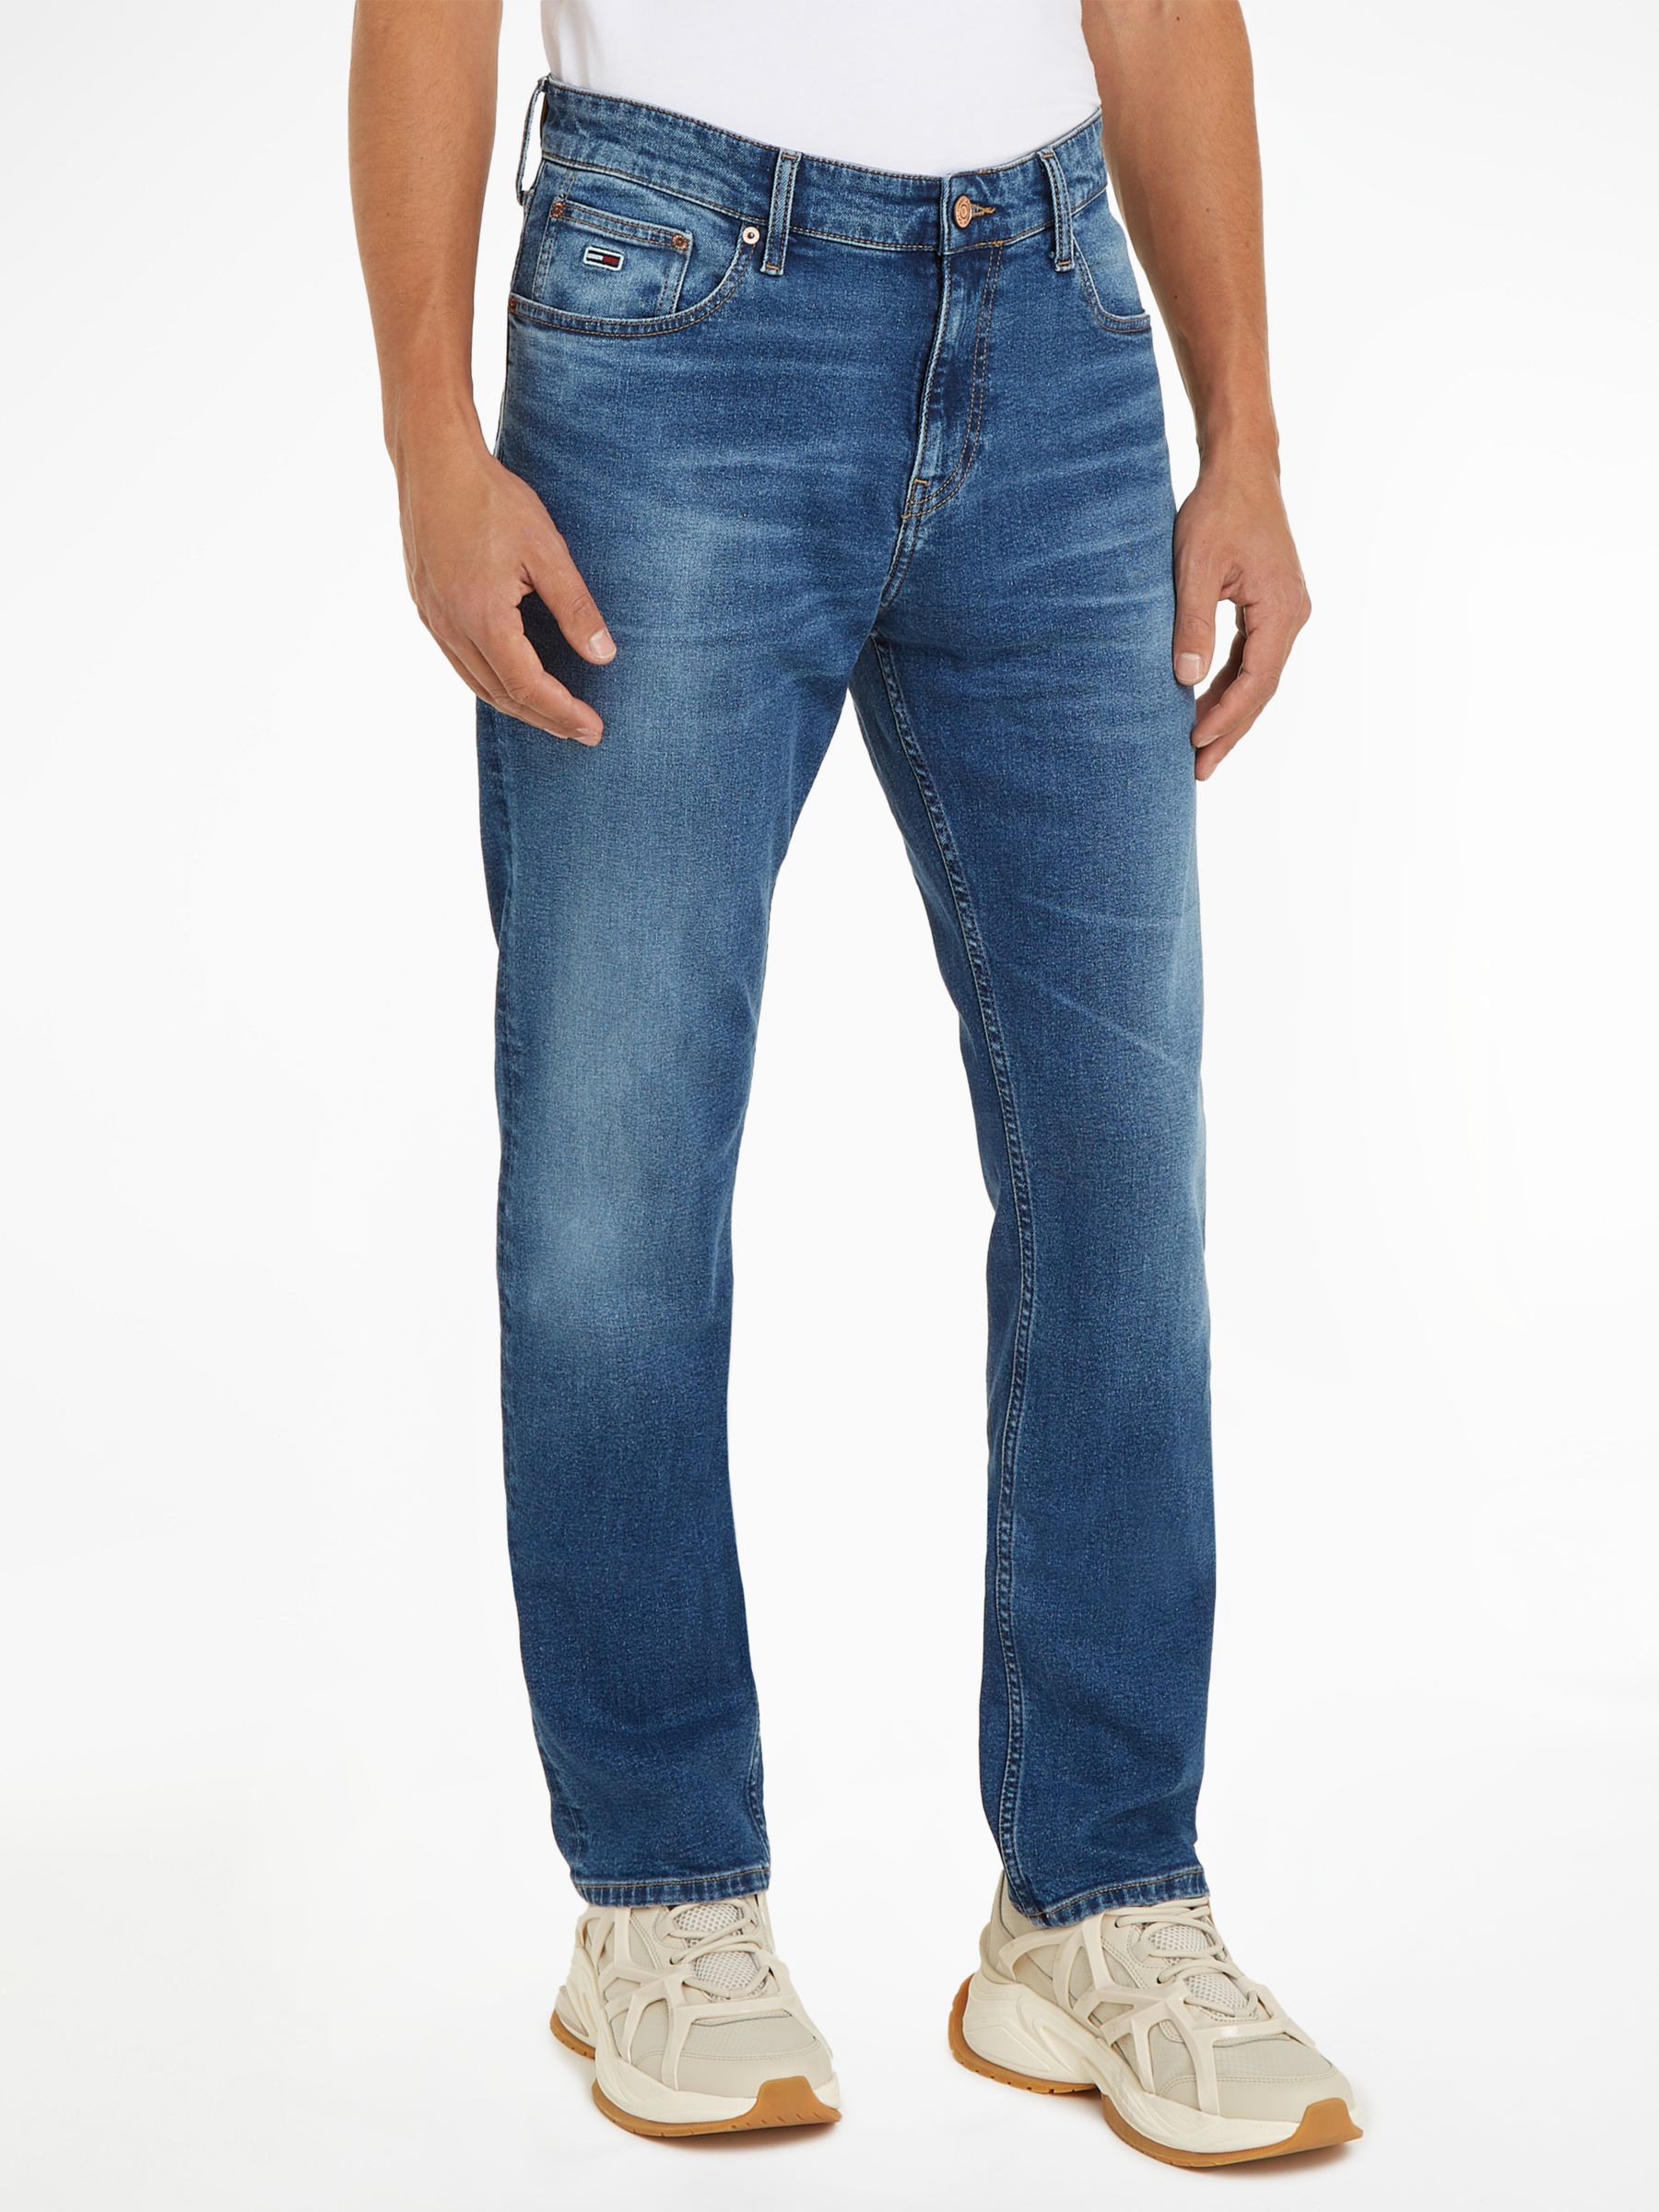 Levi's 512 Slim Taper Men's Jeans Stretch in Granite Sheets-31/30